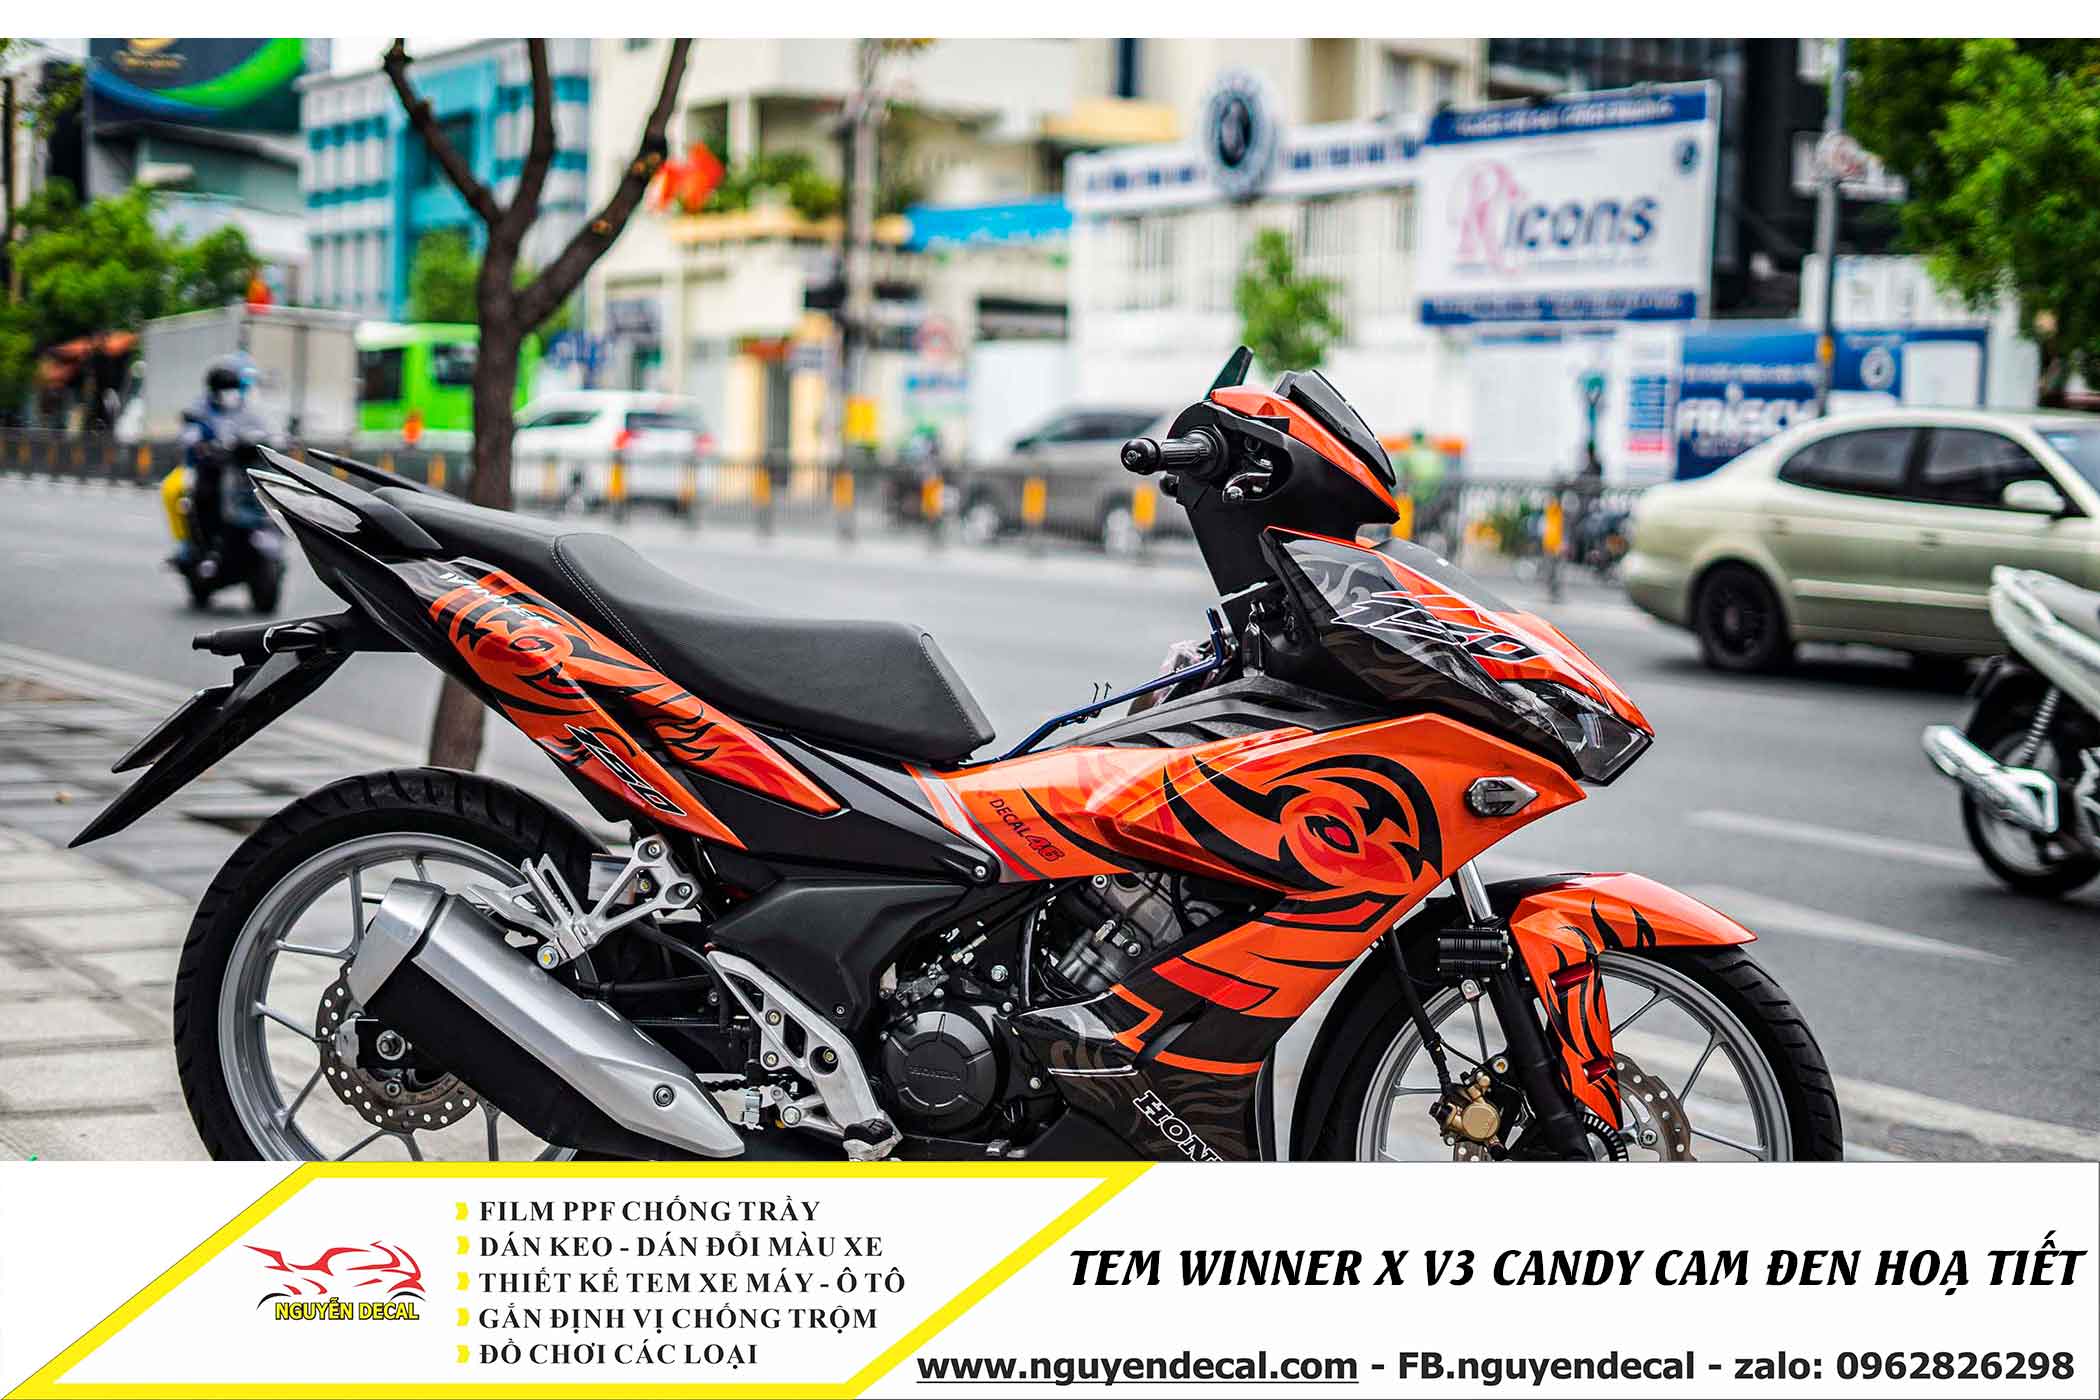 Honda Winner 2017 màu Cam Đen Biển HN    Giá 31 triệu  0842666683  Xe  Hơi Việt  Chợ Mua Bán Xe Ô Tô Xe Máy Xe Tải Xe Khách Online